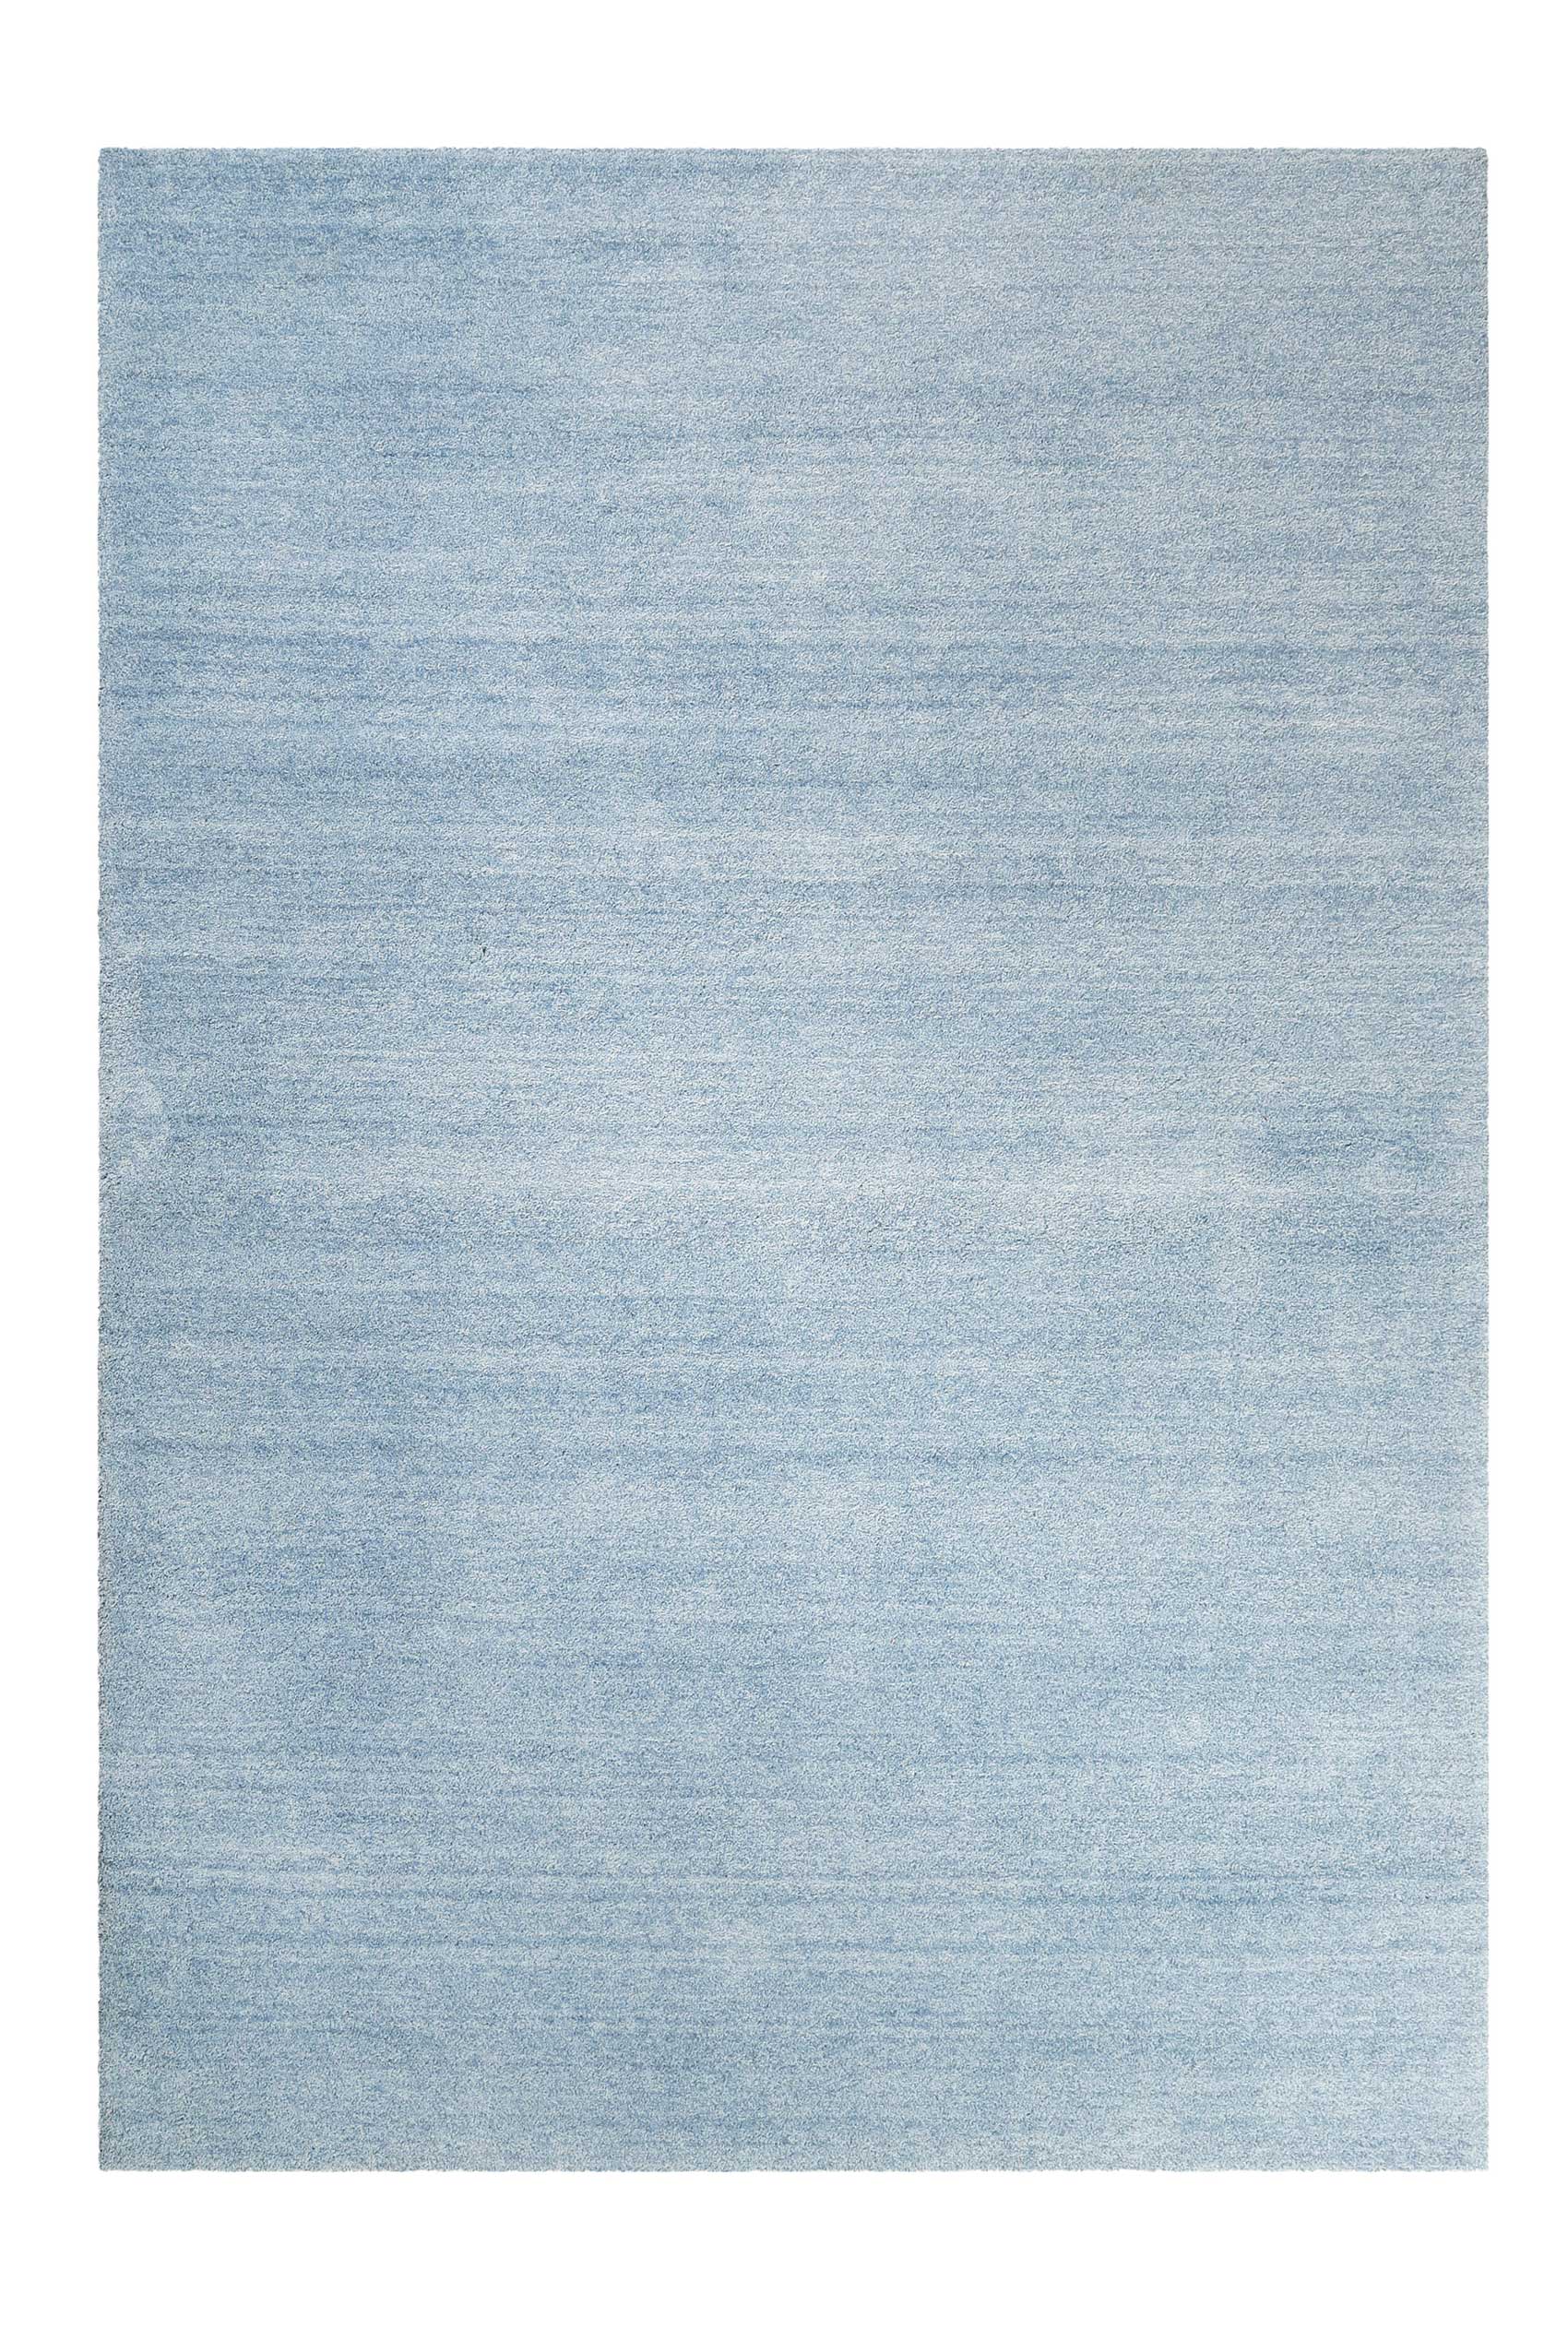 Esprit Teppich Hellblau meliert Hochflor » Loft « - Ansicht 1